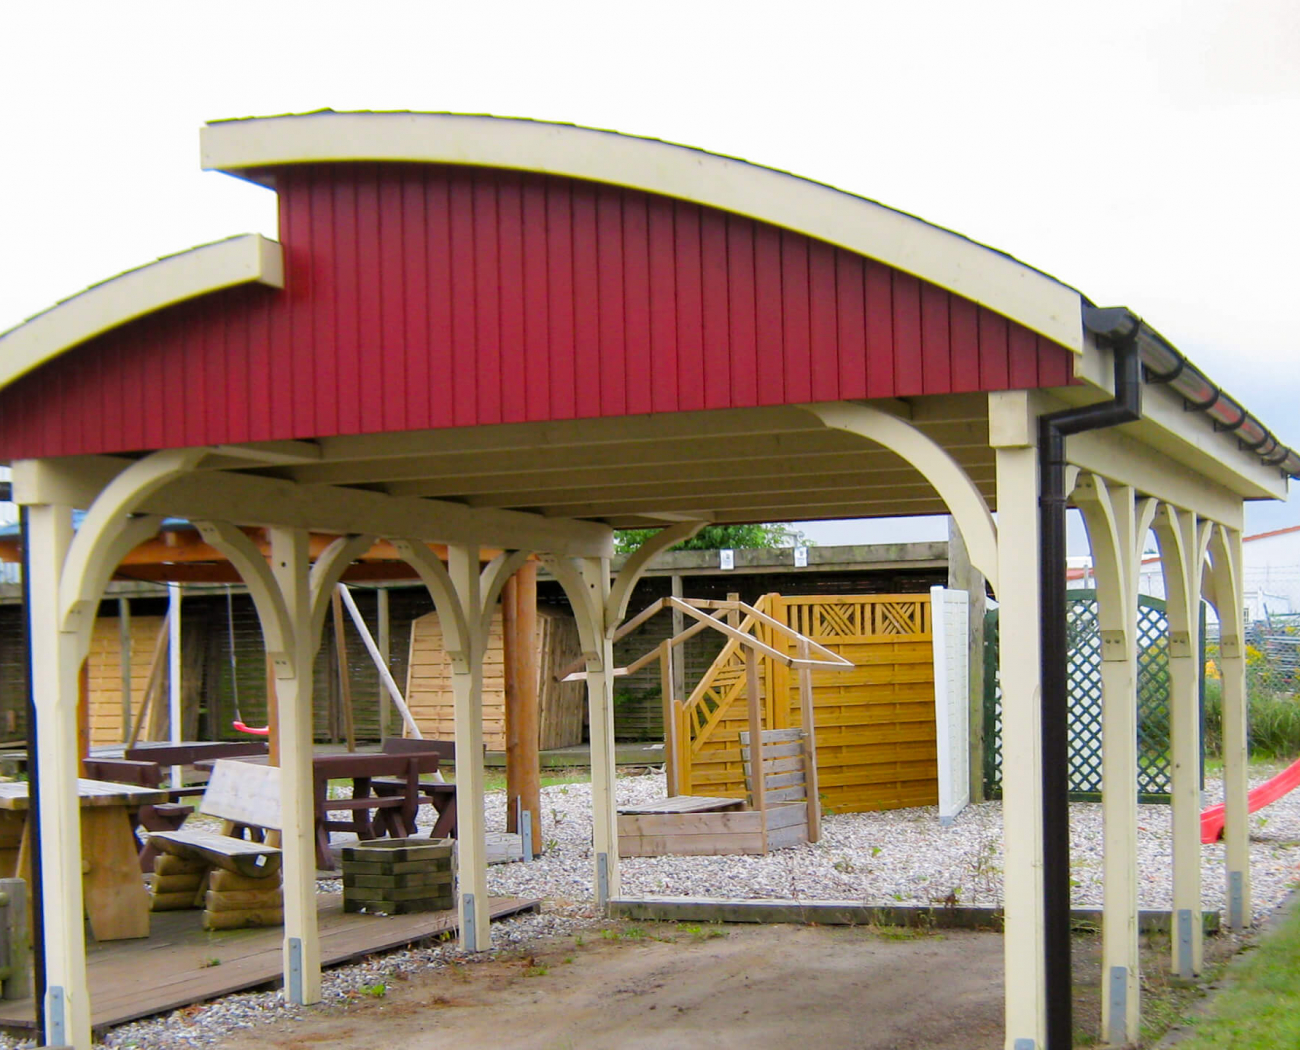 Symbolbild "Carport Holzschutz": Ein Carport mit einer außergewöhnlichen Dachform steht in einem Garten. Die Seitenteile des Dachs sind rot angestrichen. Der Carport selbst ist in einem hellen Holzton gehalten.